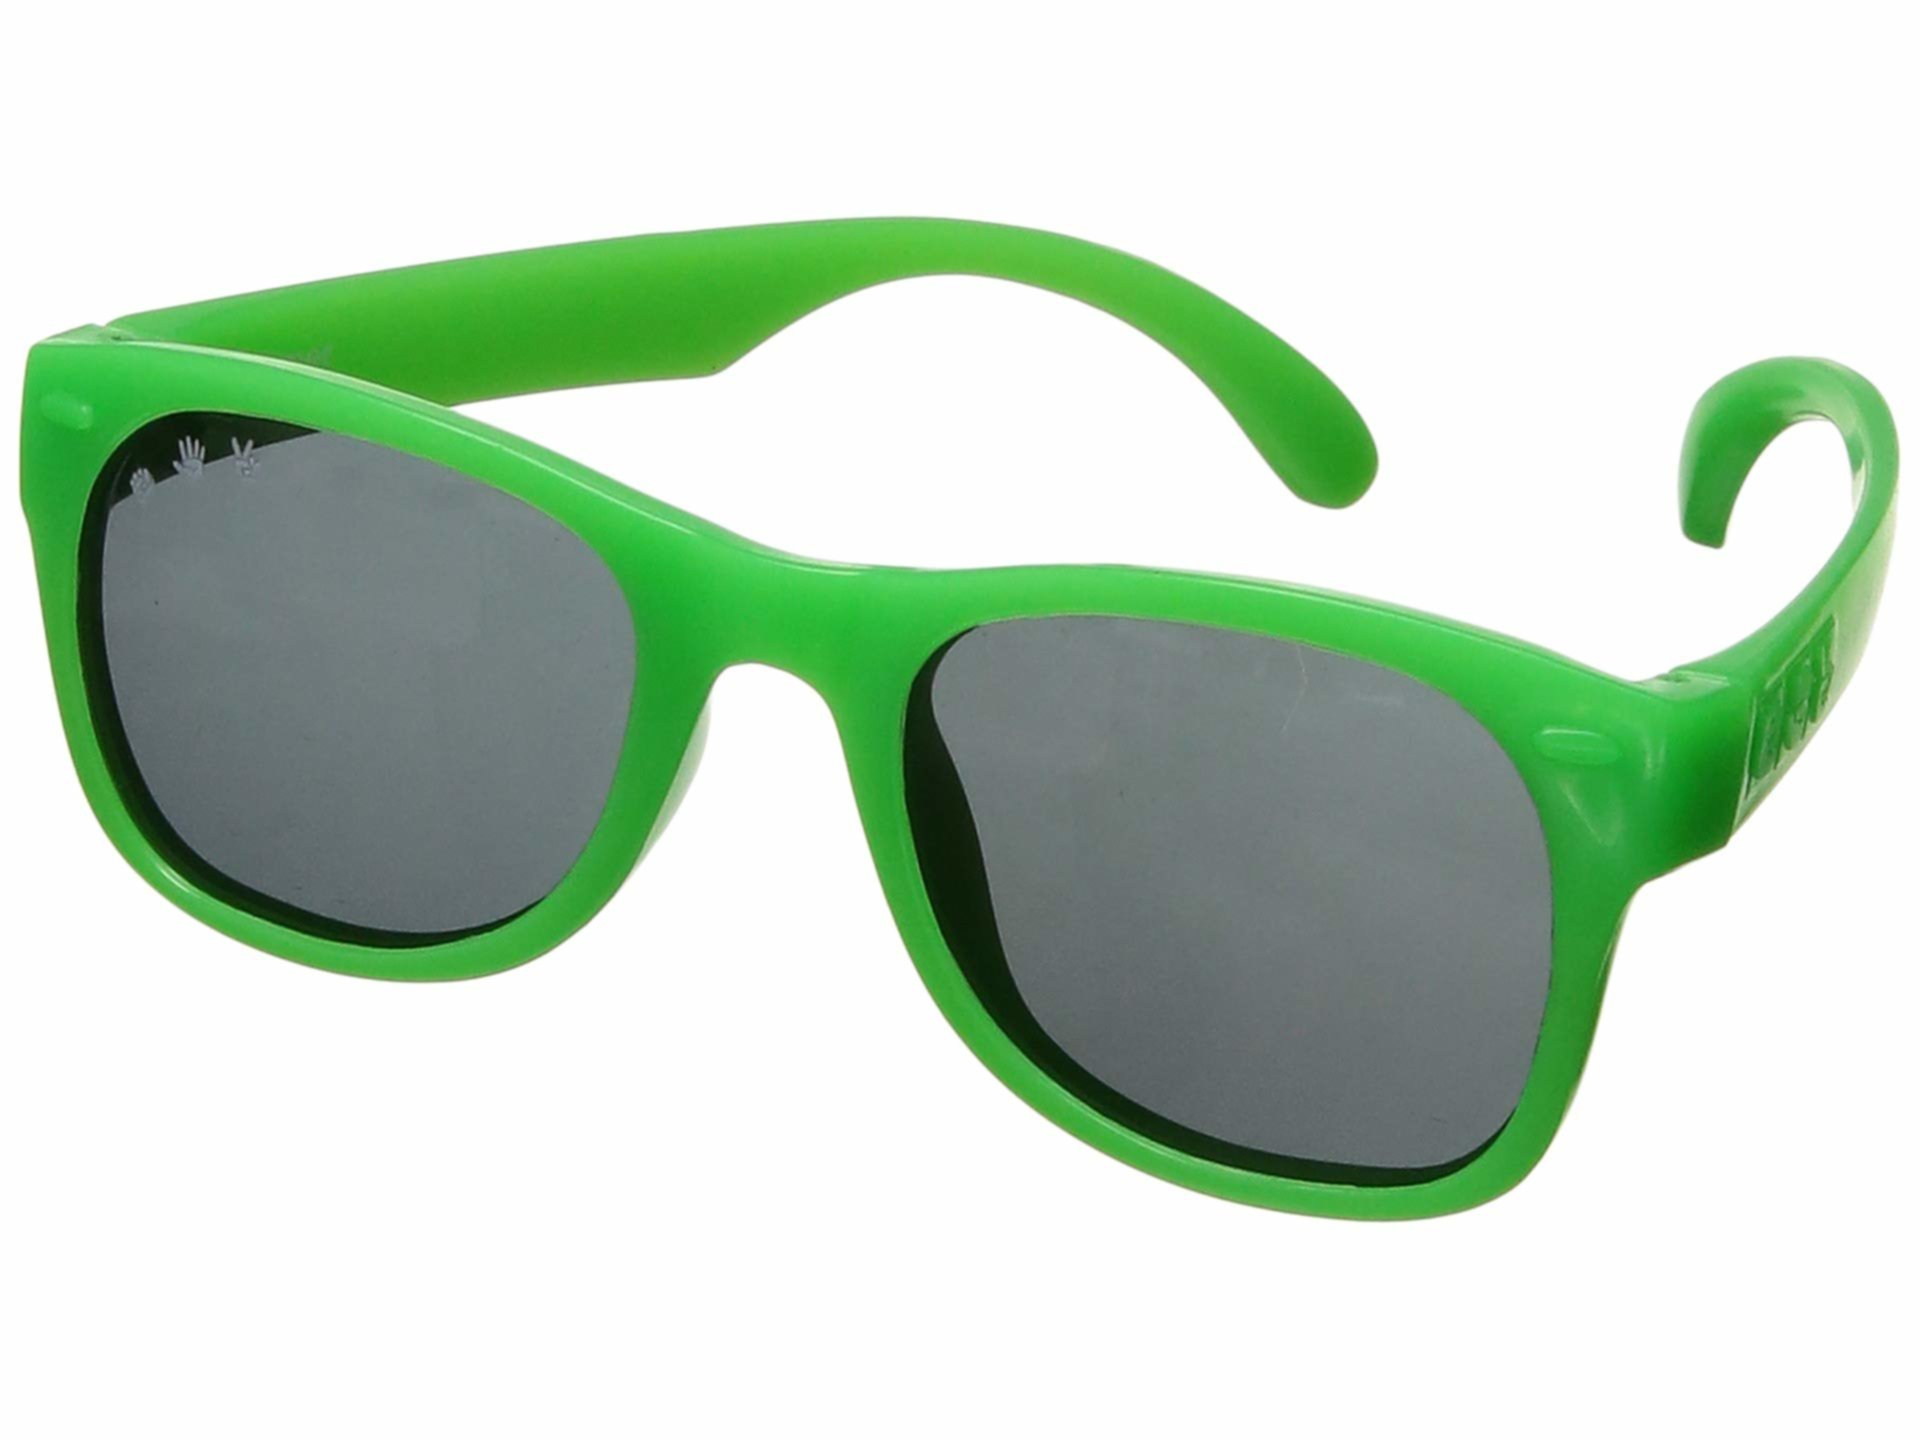 Ярко-зеленые гибкие солнцезащитные очки (детские) Ro.sham.bo baby